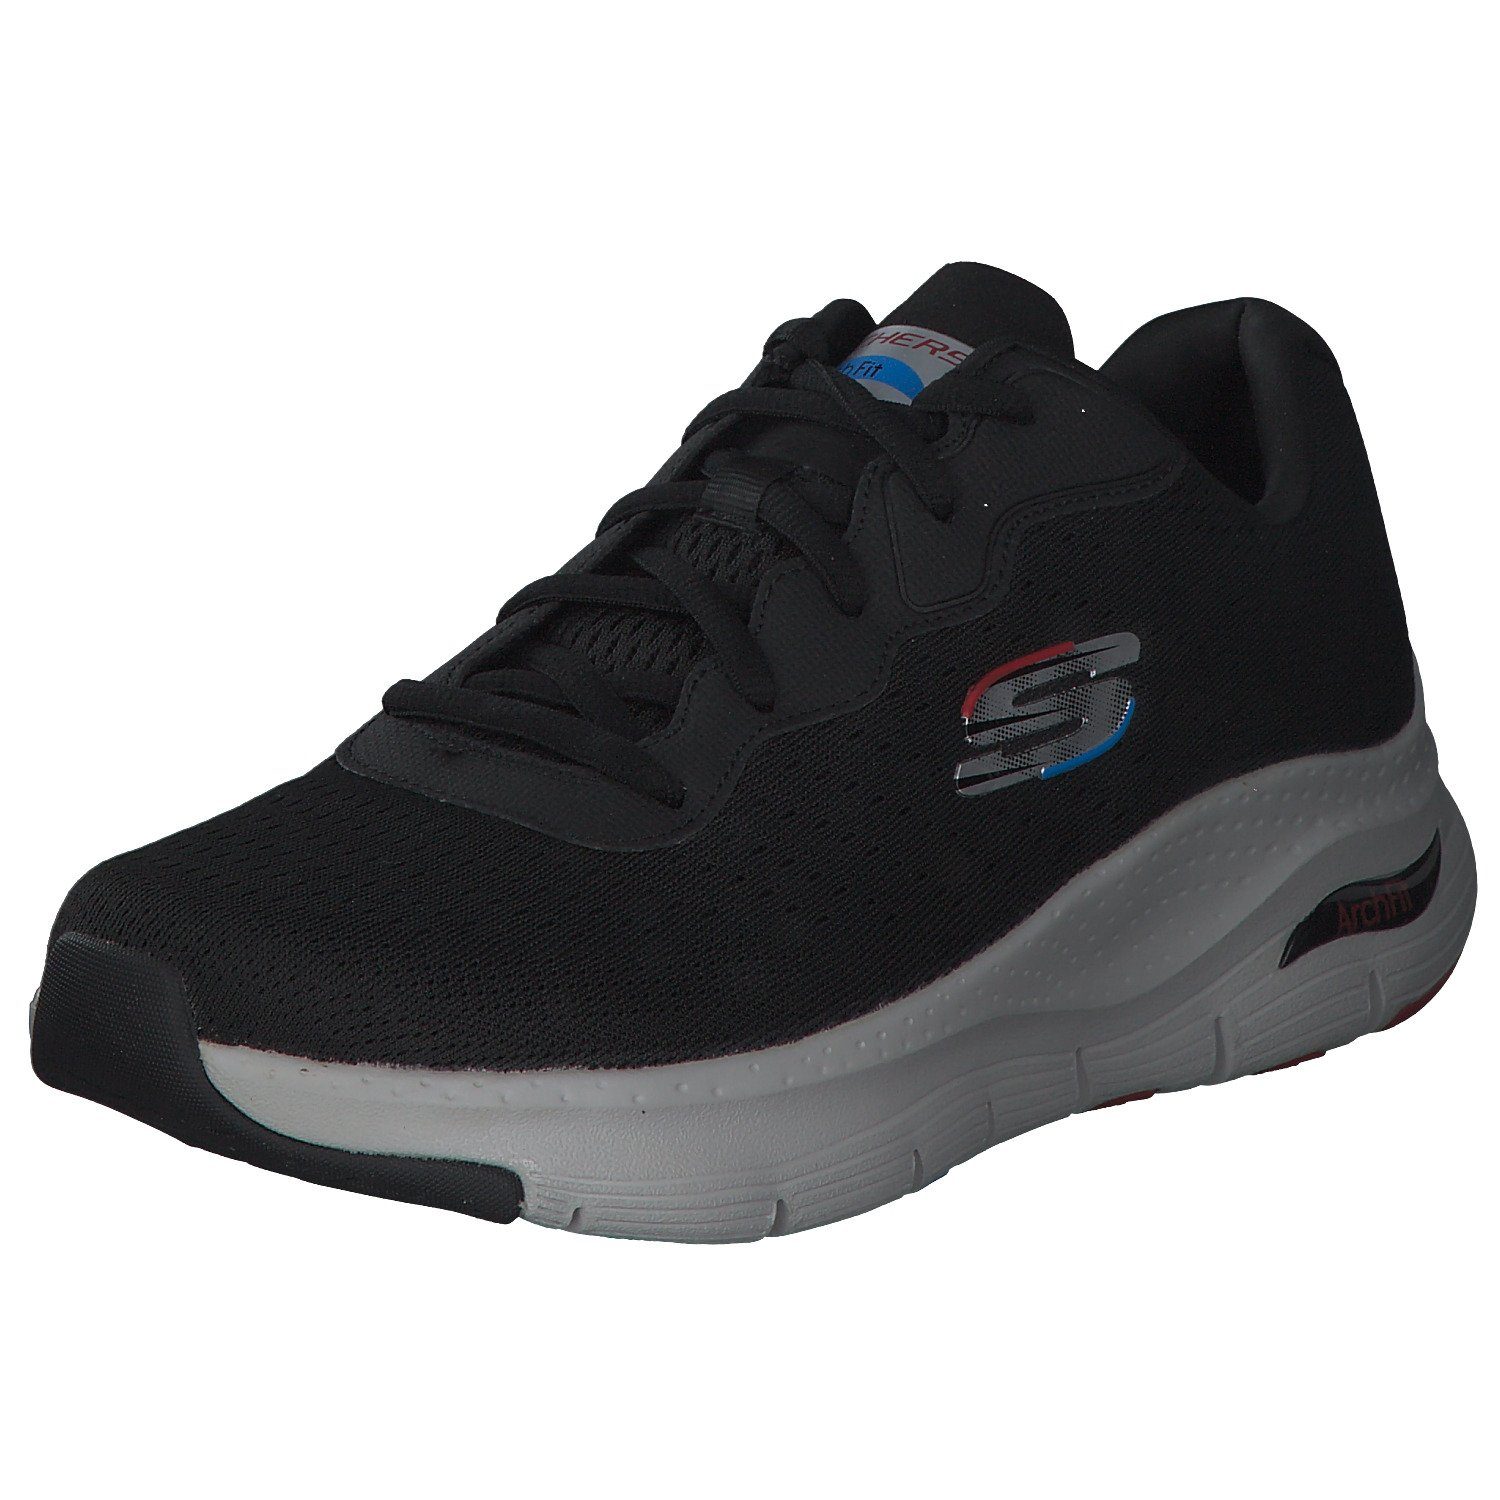 Skechers Skechers BLK 52559 Sneaker black (20202724)